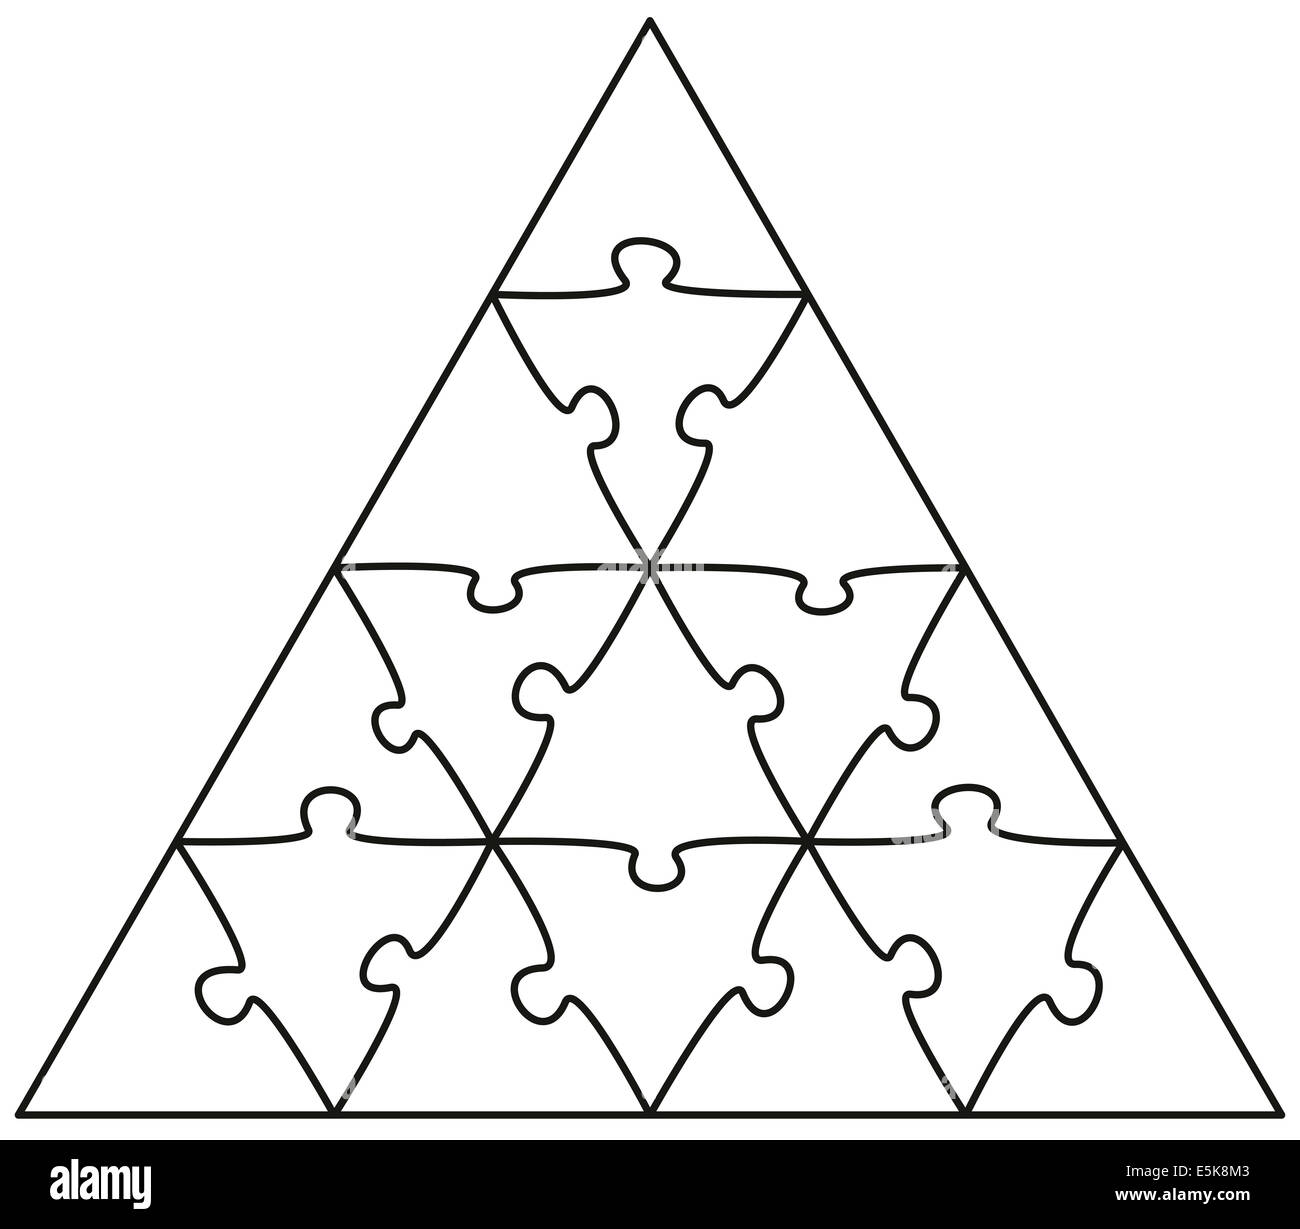 Jigsaw Puzzle Triángulo - Ilustración sobre fondo blanco. Foto de stock